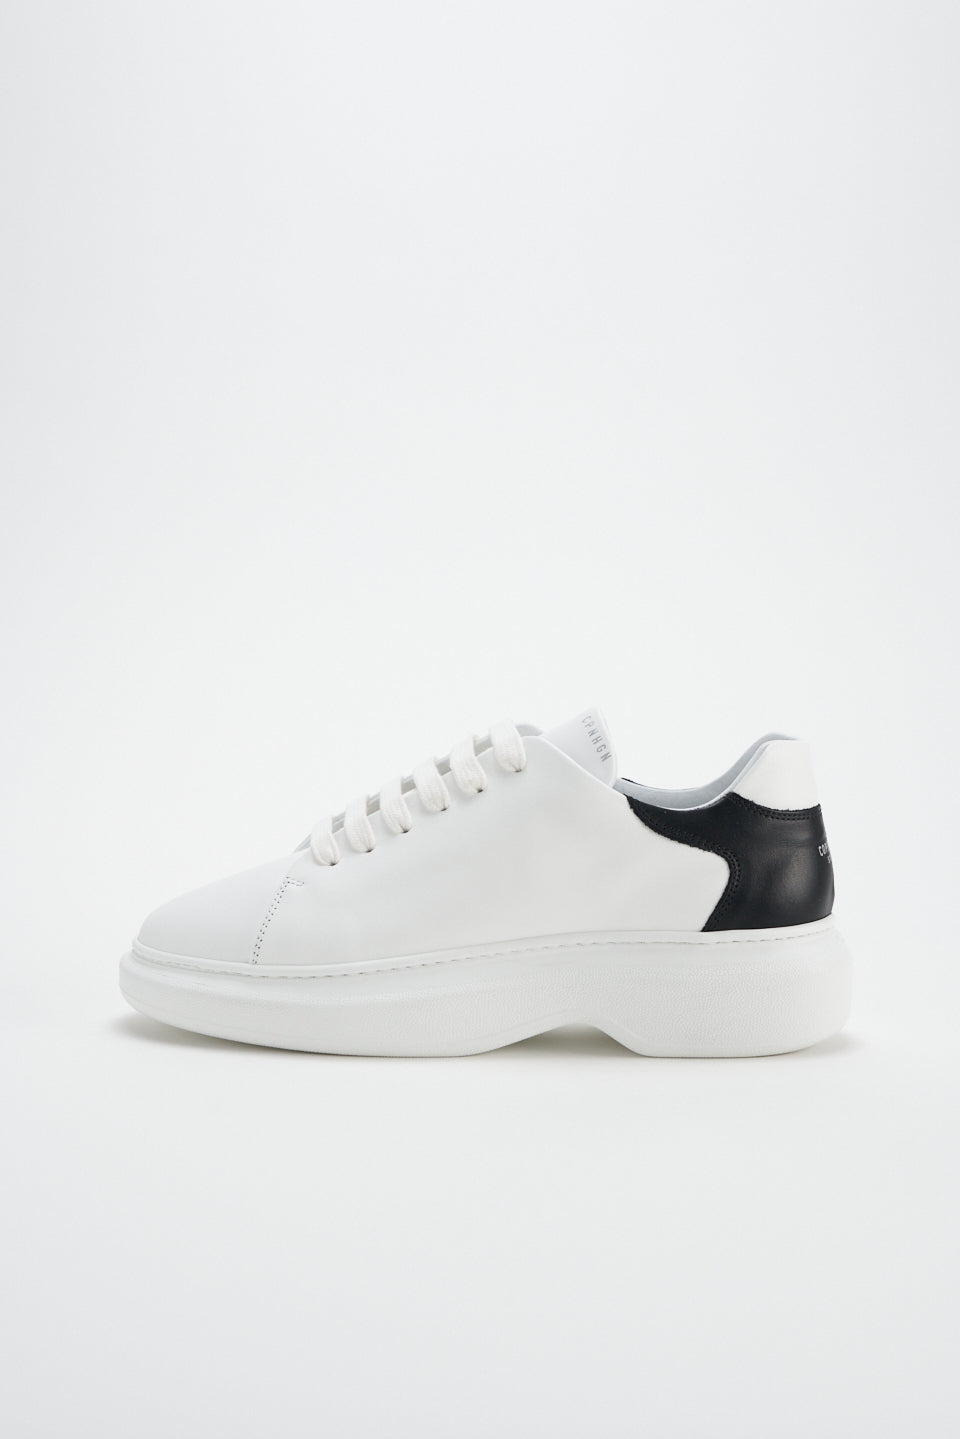 Vitello White Black Chunky Sneakers CPH812 - 9